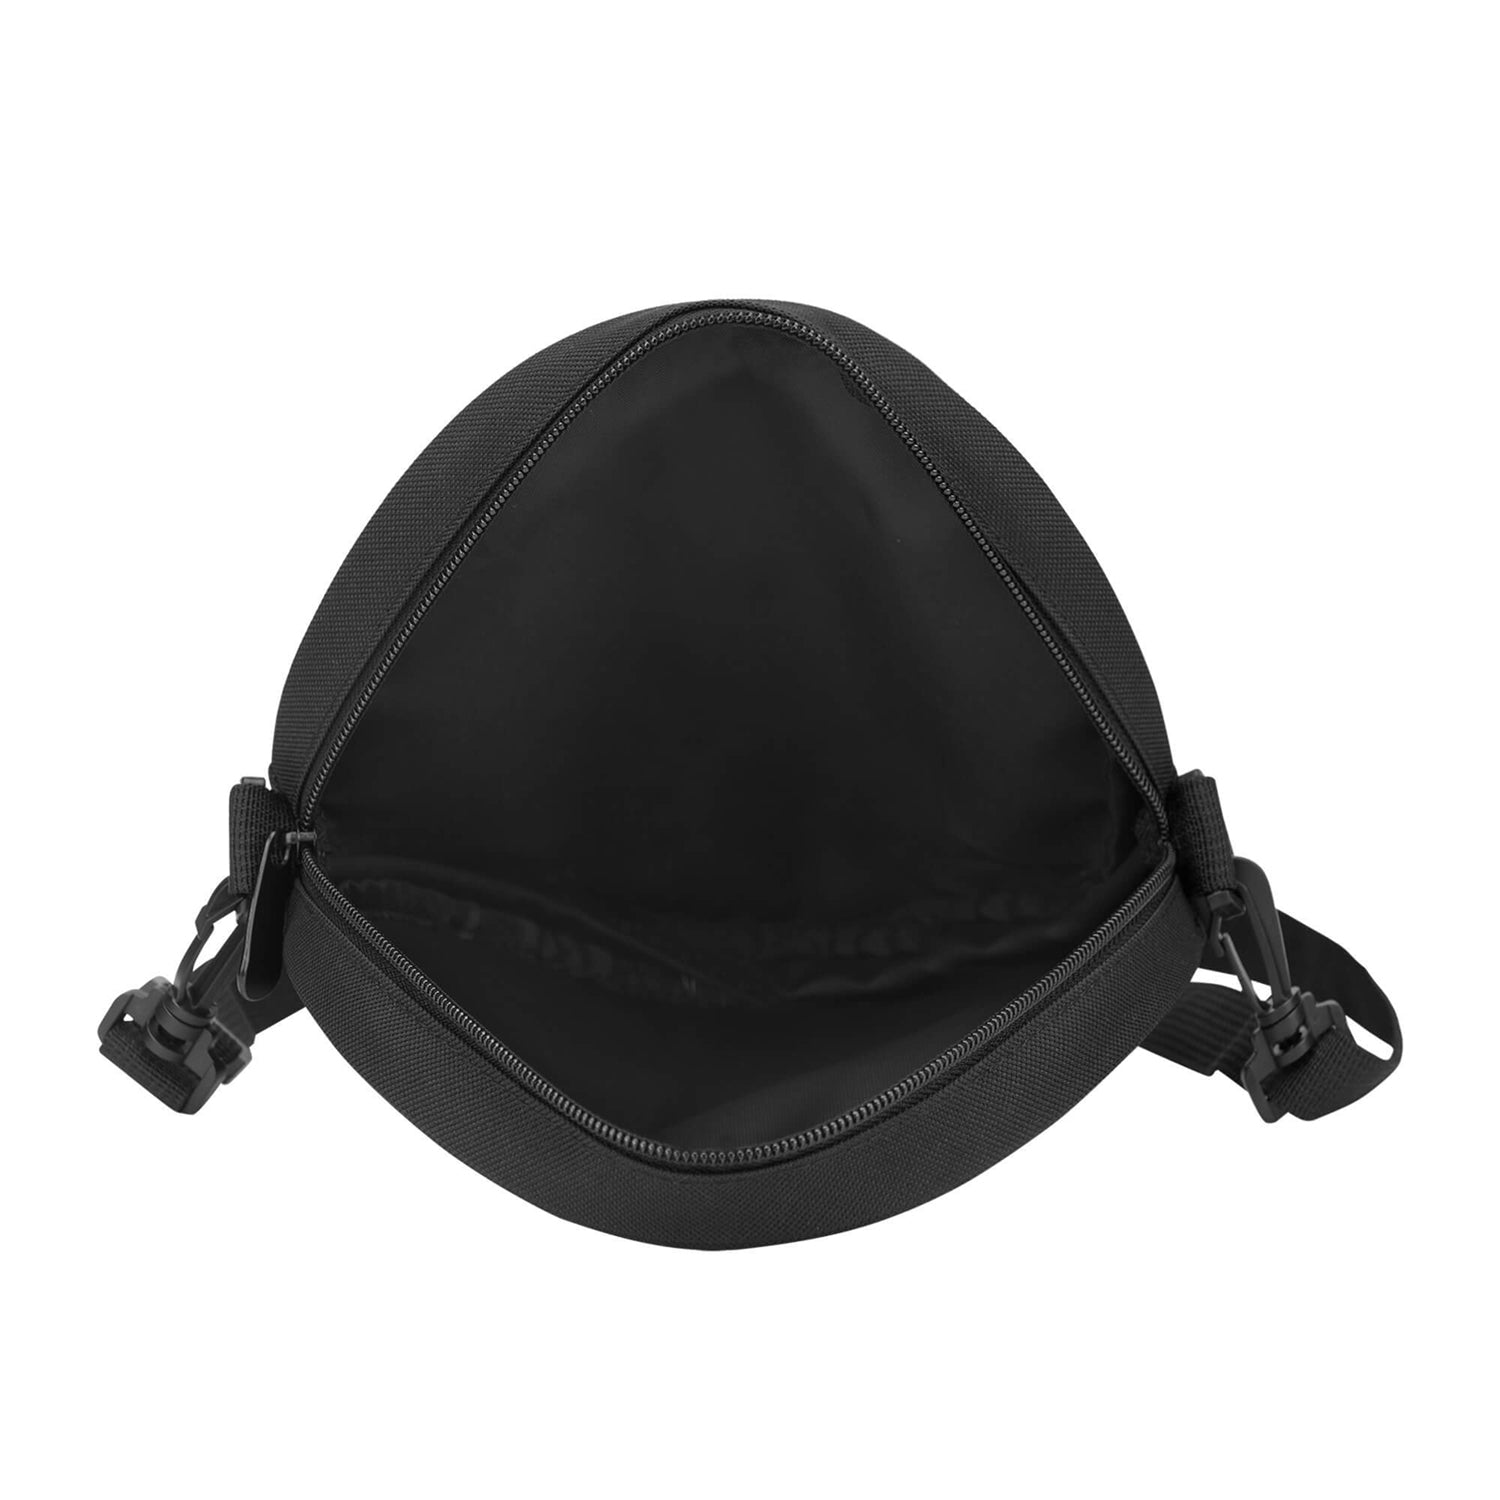 drummond-ancient-tartan-round-satchel-bags